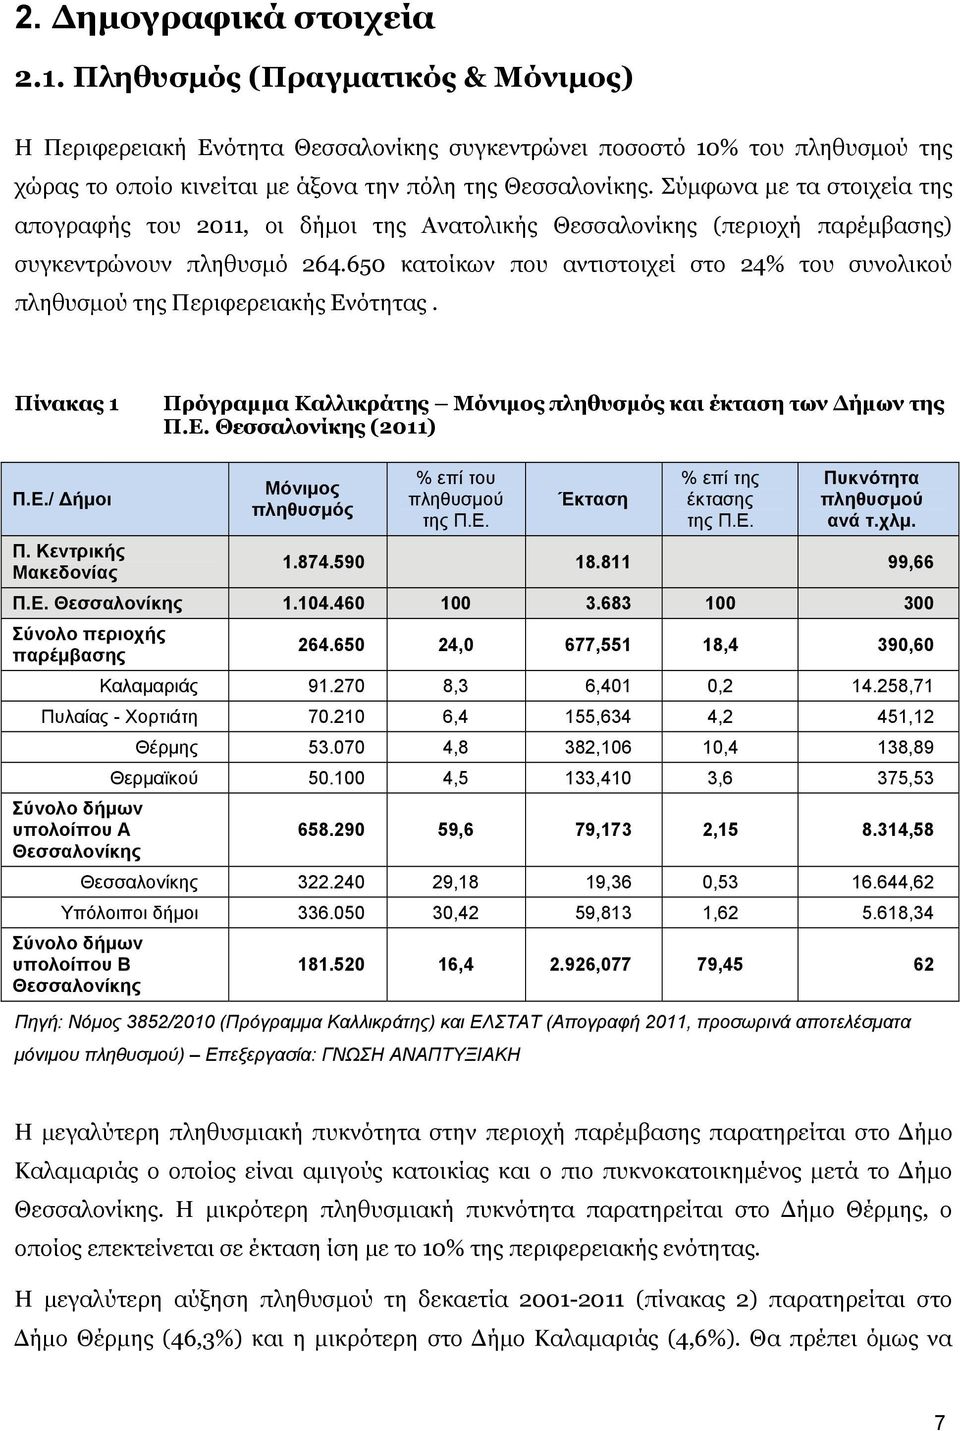 Σύμφωνα με τα στοιχεία της απογραφής του 2011, οι δήμοι της Ανατολικής Θεσσαλονίκης (περιοχή παρέμβασης) συγκεντρώνουν πληθυσμό 264.